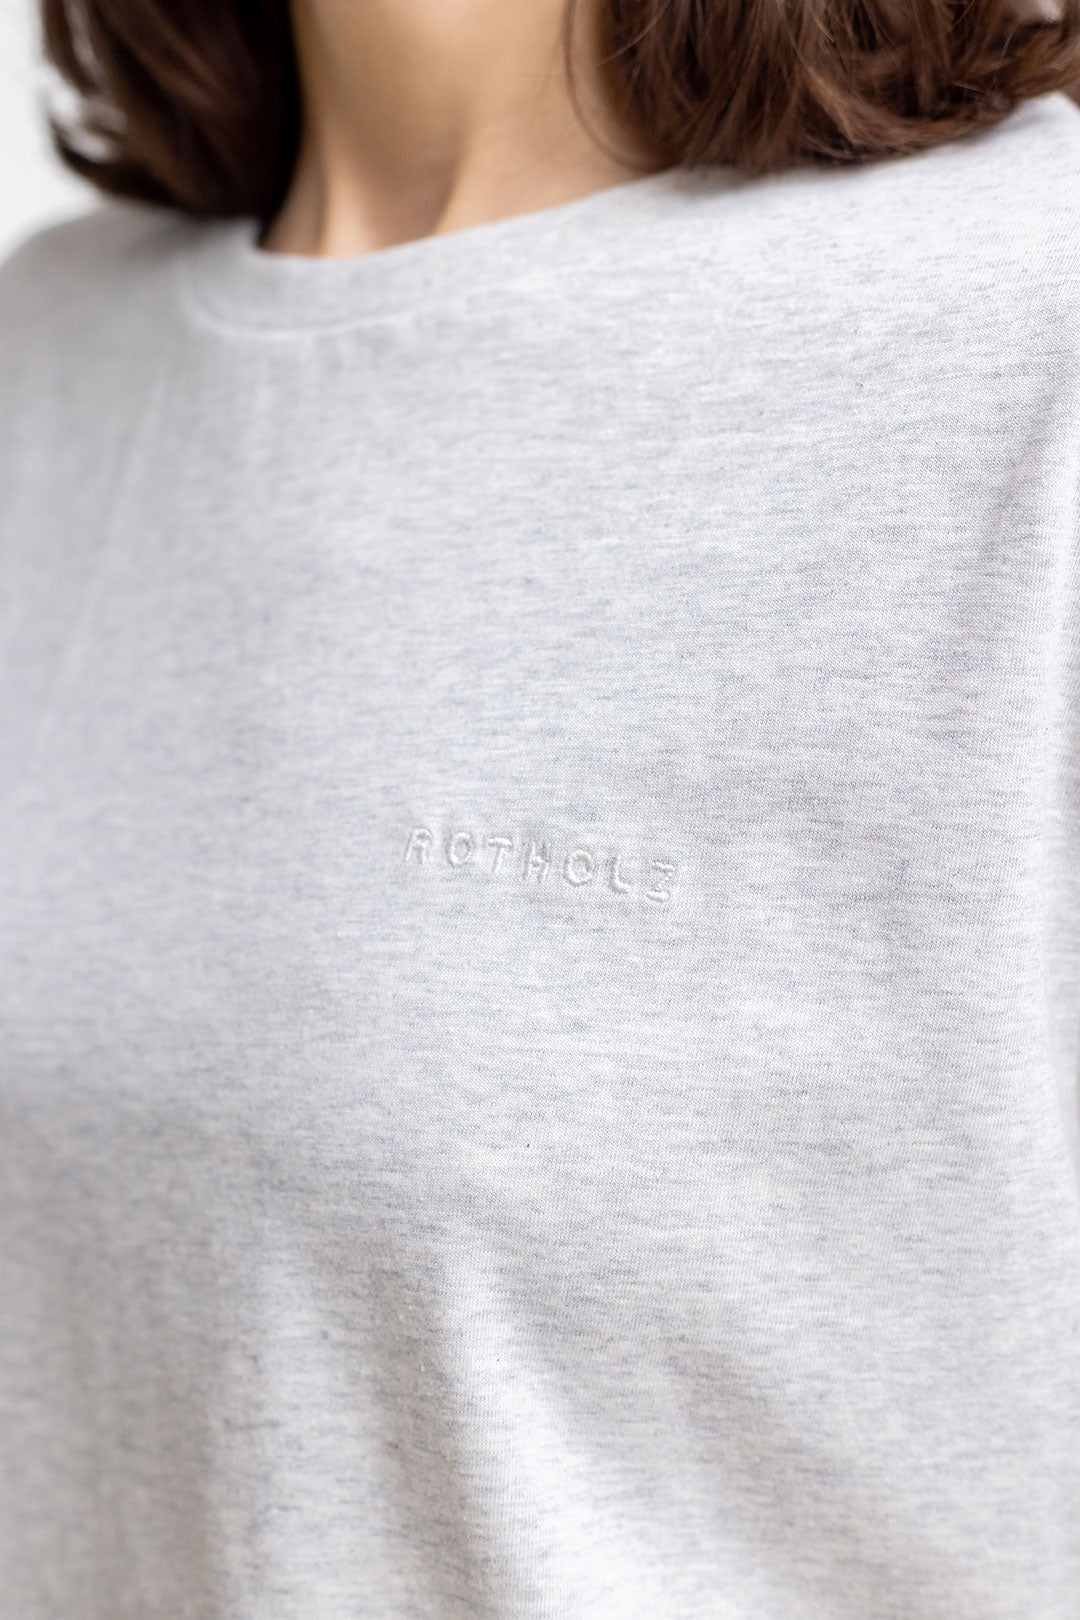 Hell-graues T-Shirt Logo aus 100% Bio-Baumwolle von Rotholz